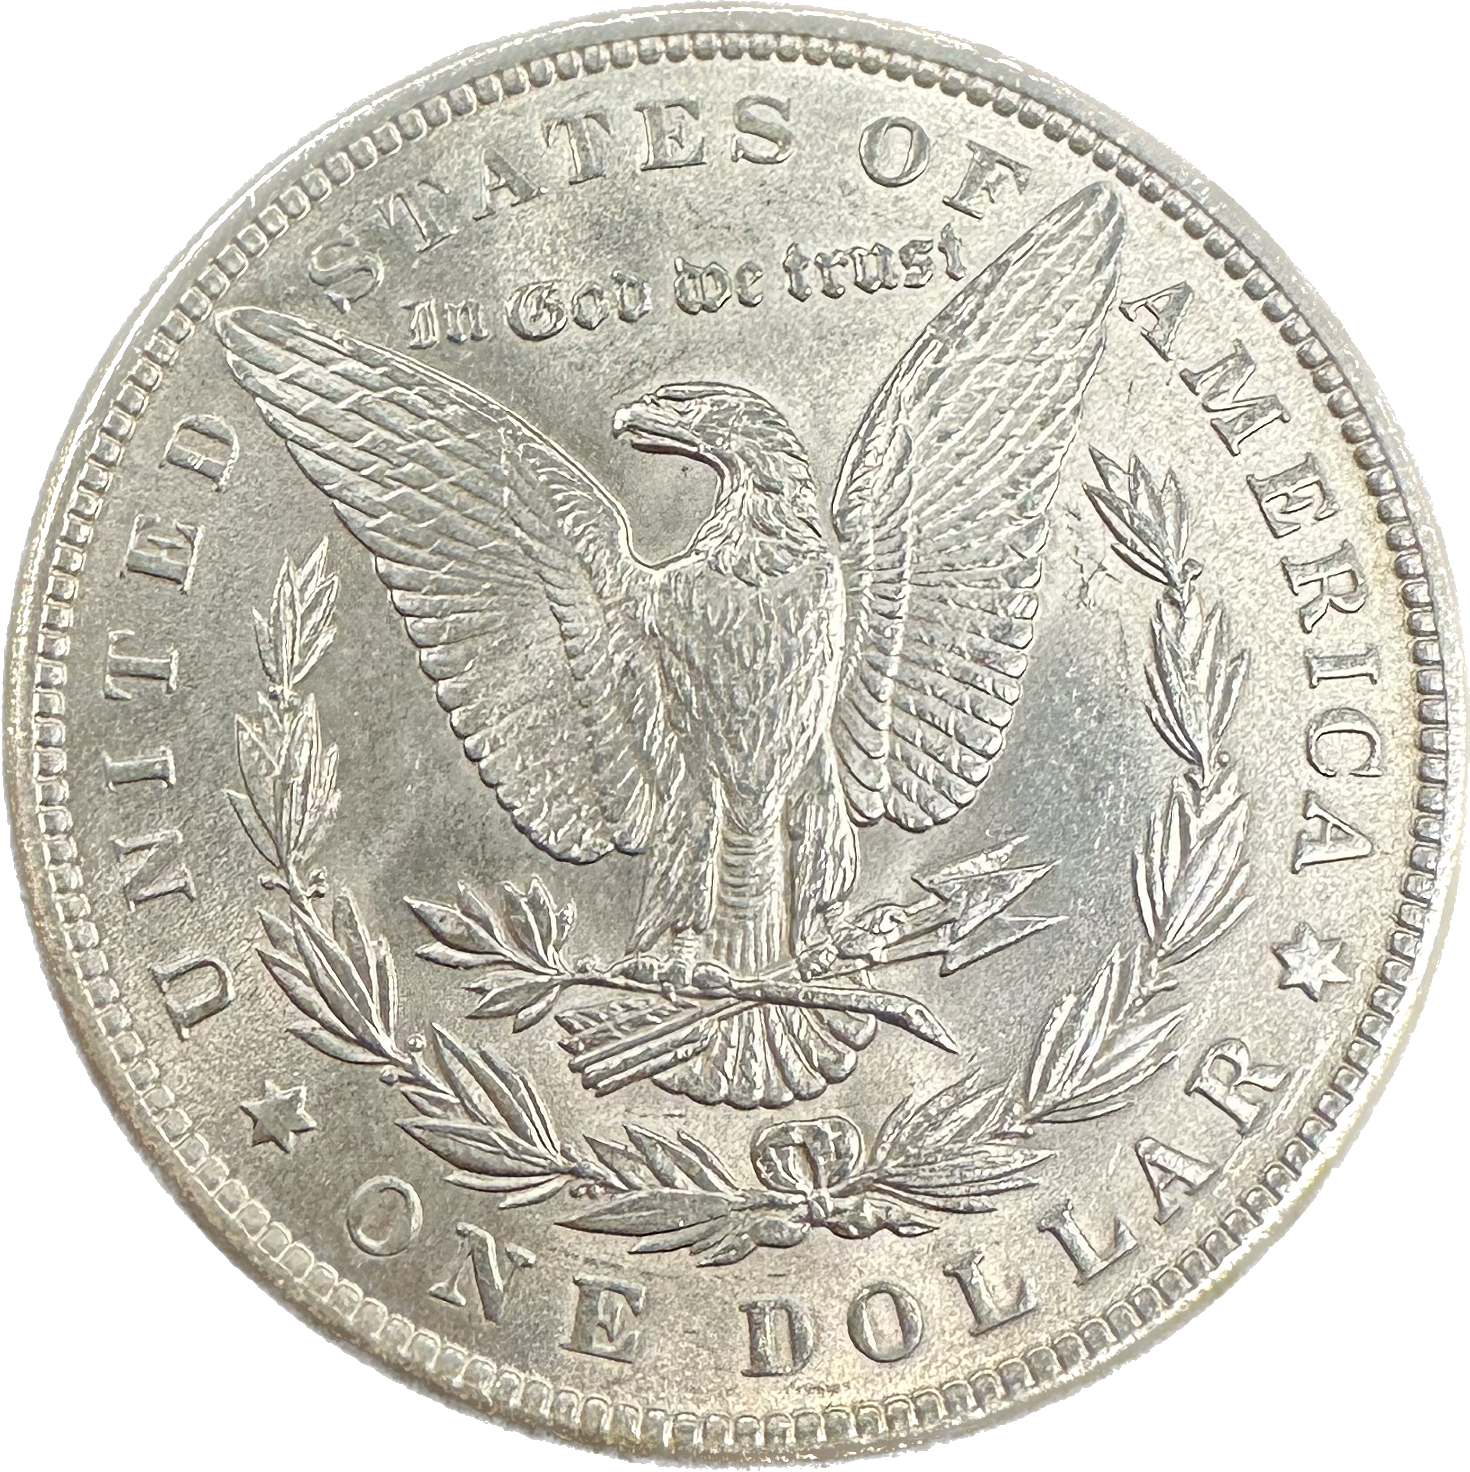 USA Morgan Dollar 1888 MS-65 Coin